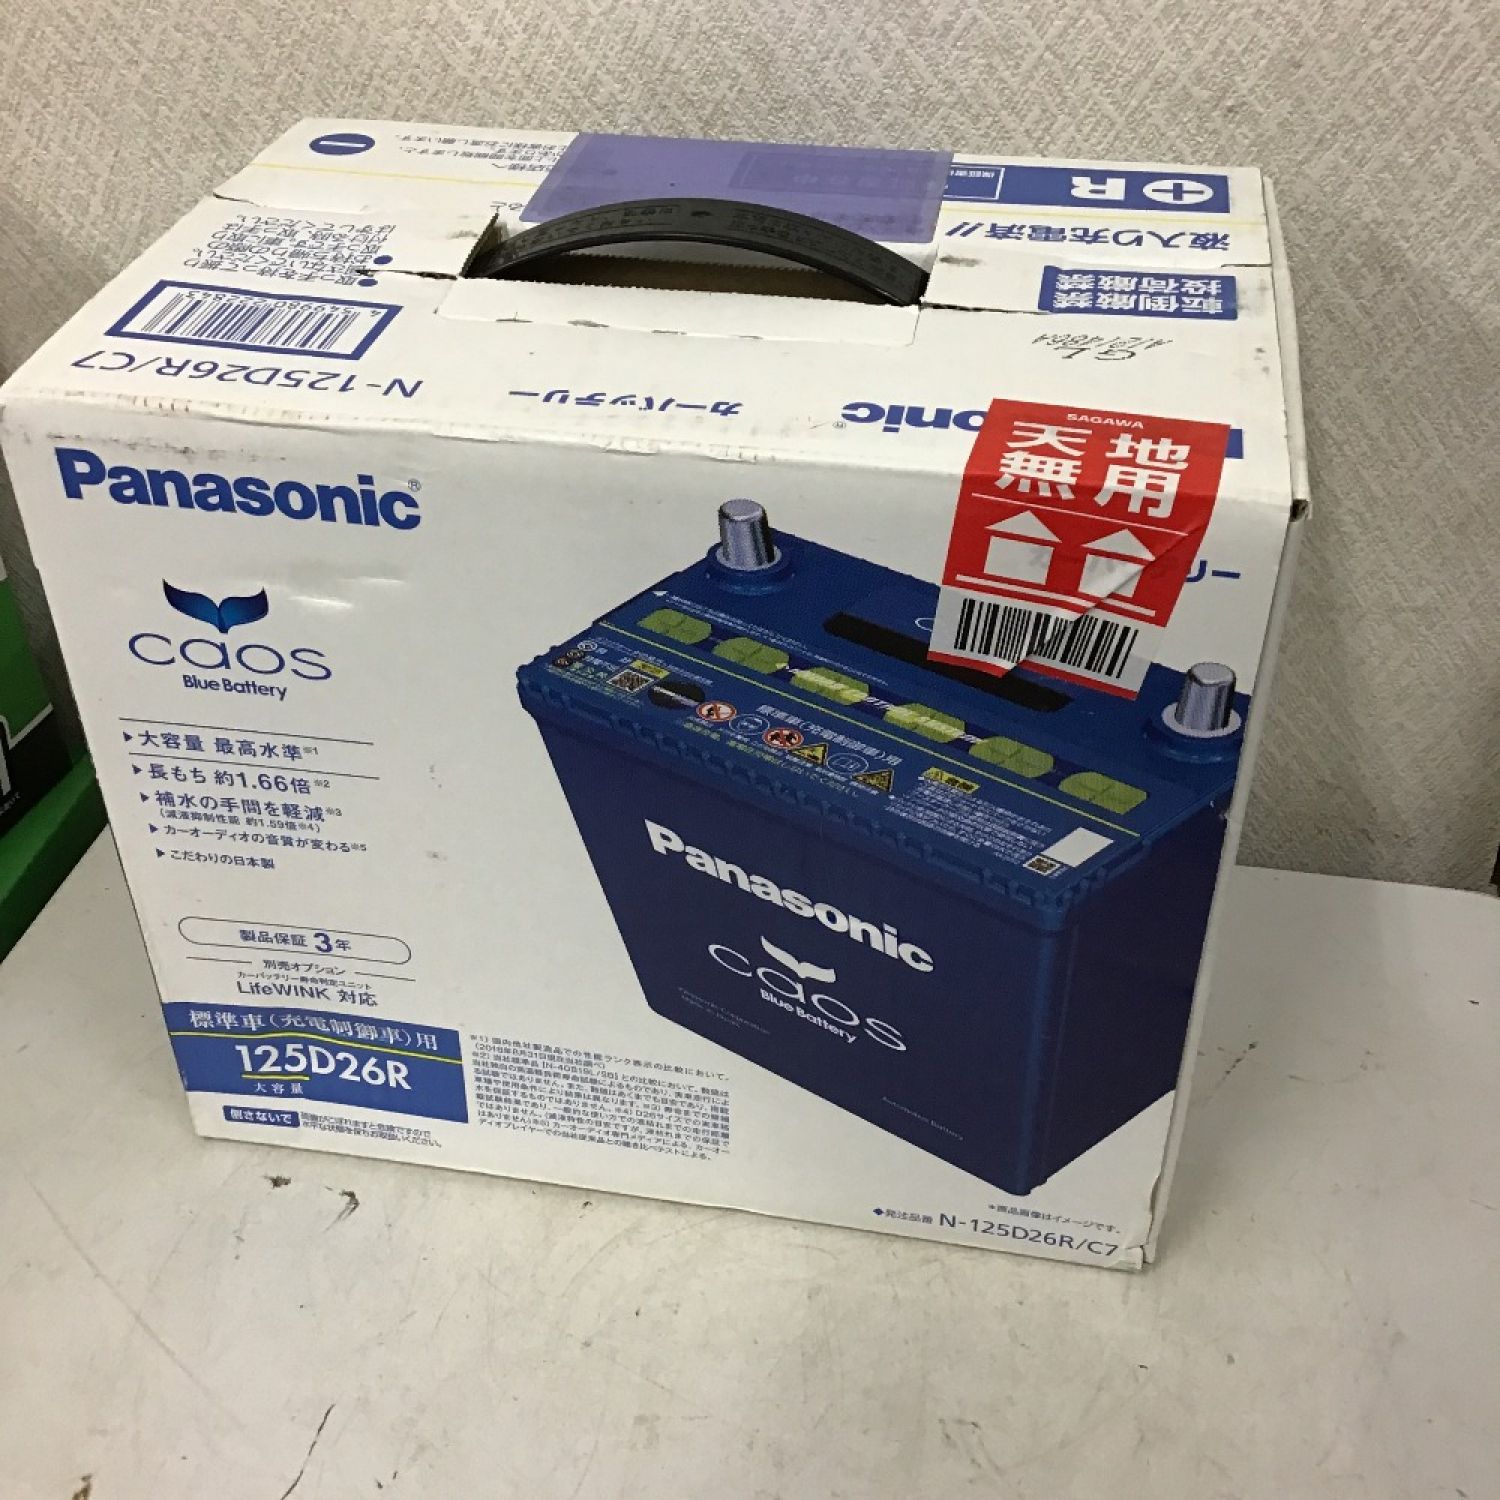 中古】 Panasonic パナソニック カーバッテリー caos 125D26R/C7 S